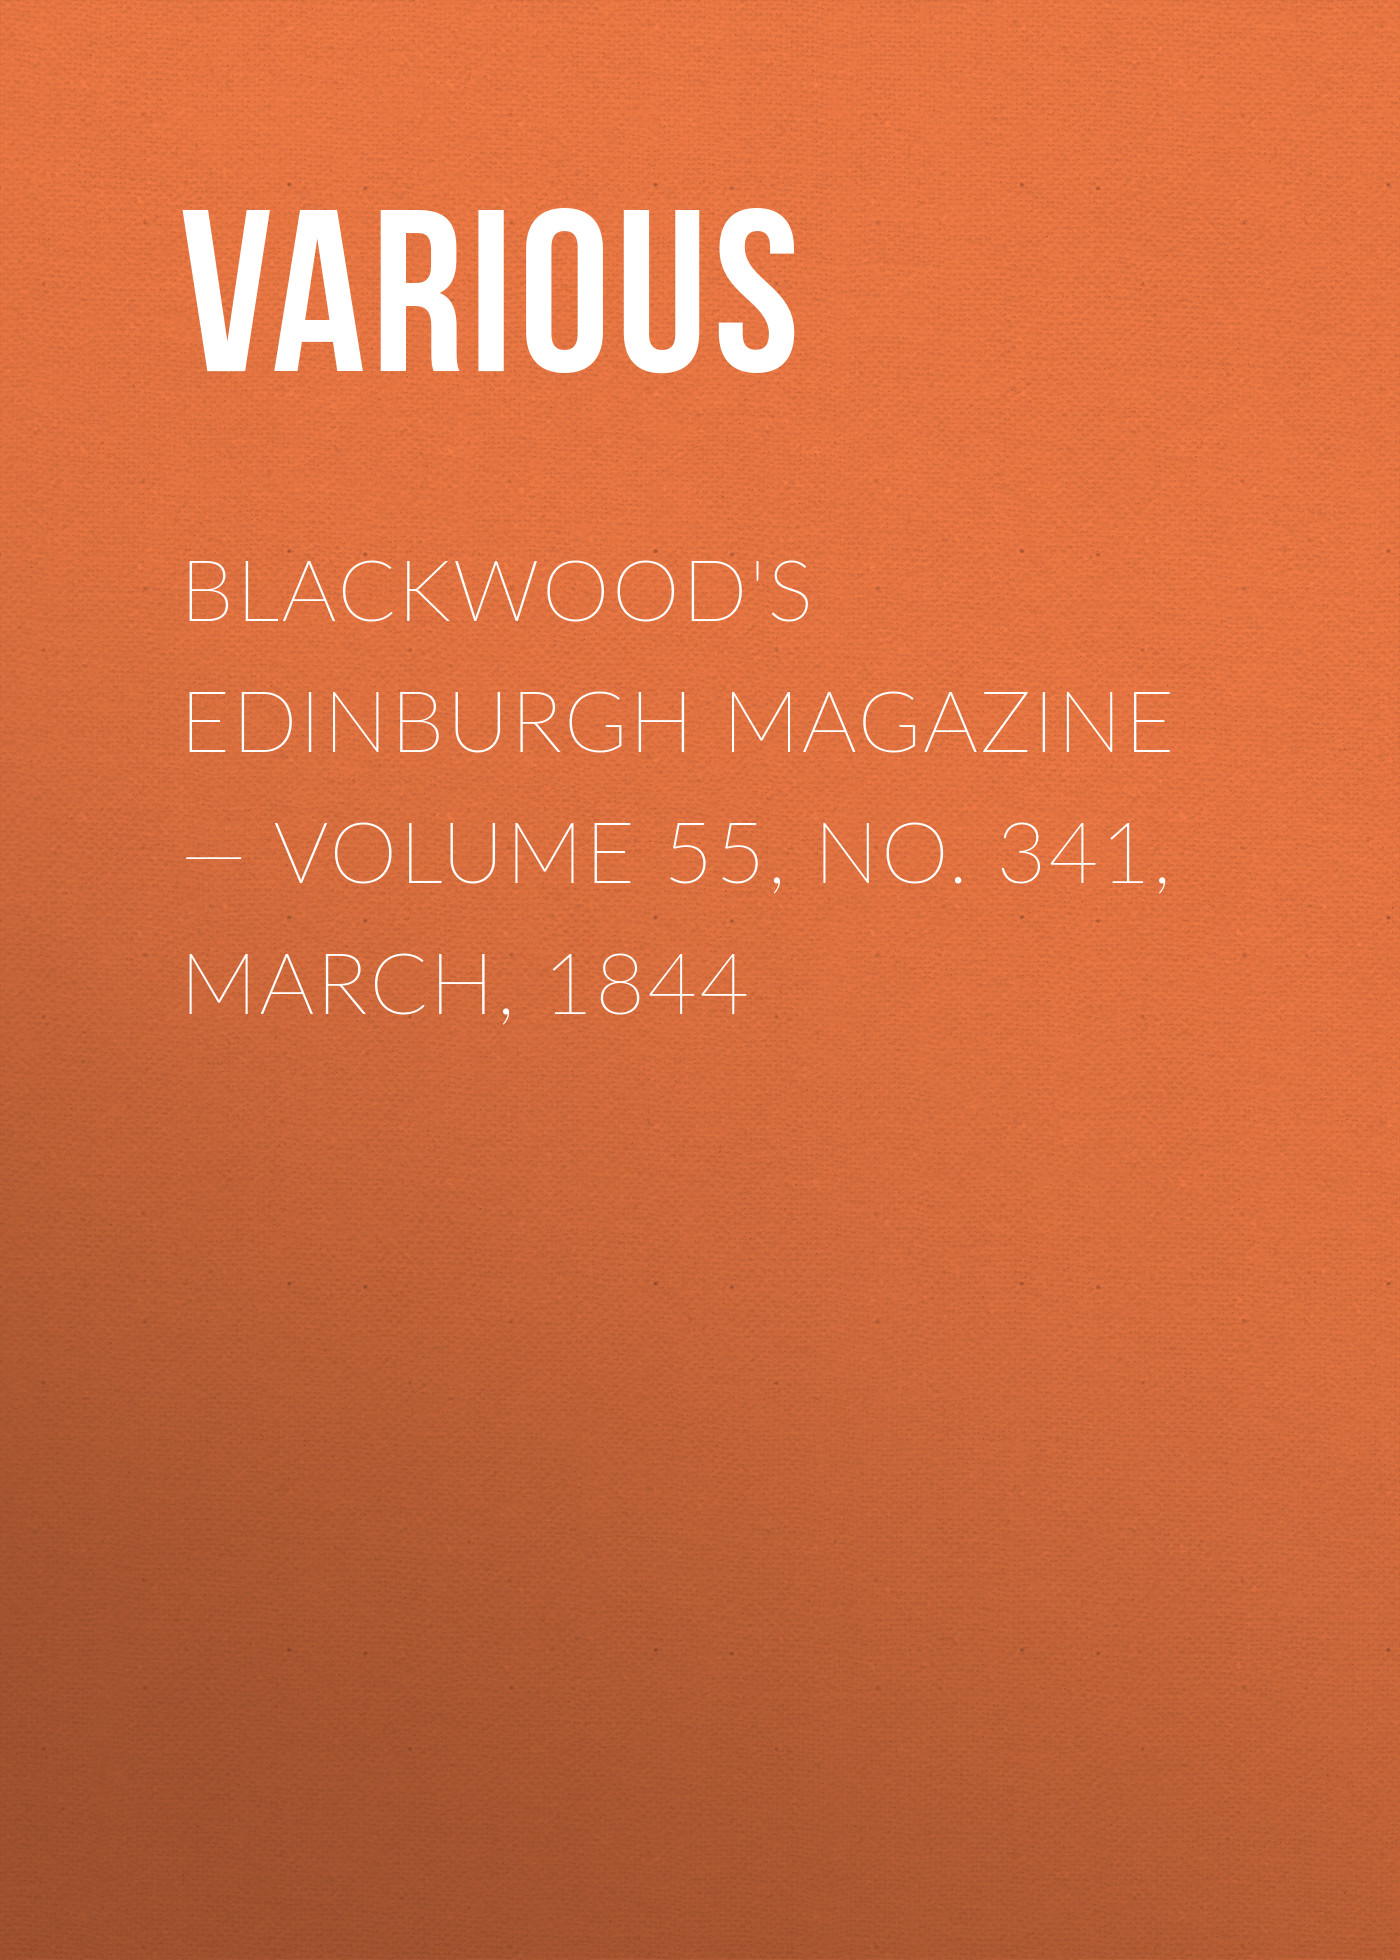 Книга Blackwoods Edinburgh Magazine – Volume 55, No. 341, March, 1844 из серии , созданная  Various, может относится к жанру Зарубежная старинная литература, Журналы, Зарубежная образовательная литература. Стоимость электронной книги Blackwoods Edinburgh Magazine – Volume 55, No. 341, March, 1844 с идентификатором 35491943 составляет 0 руб.